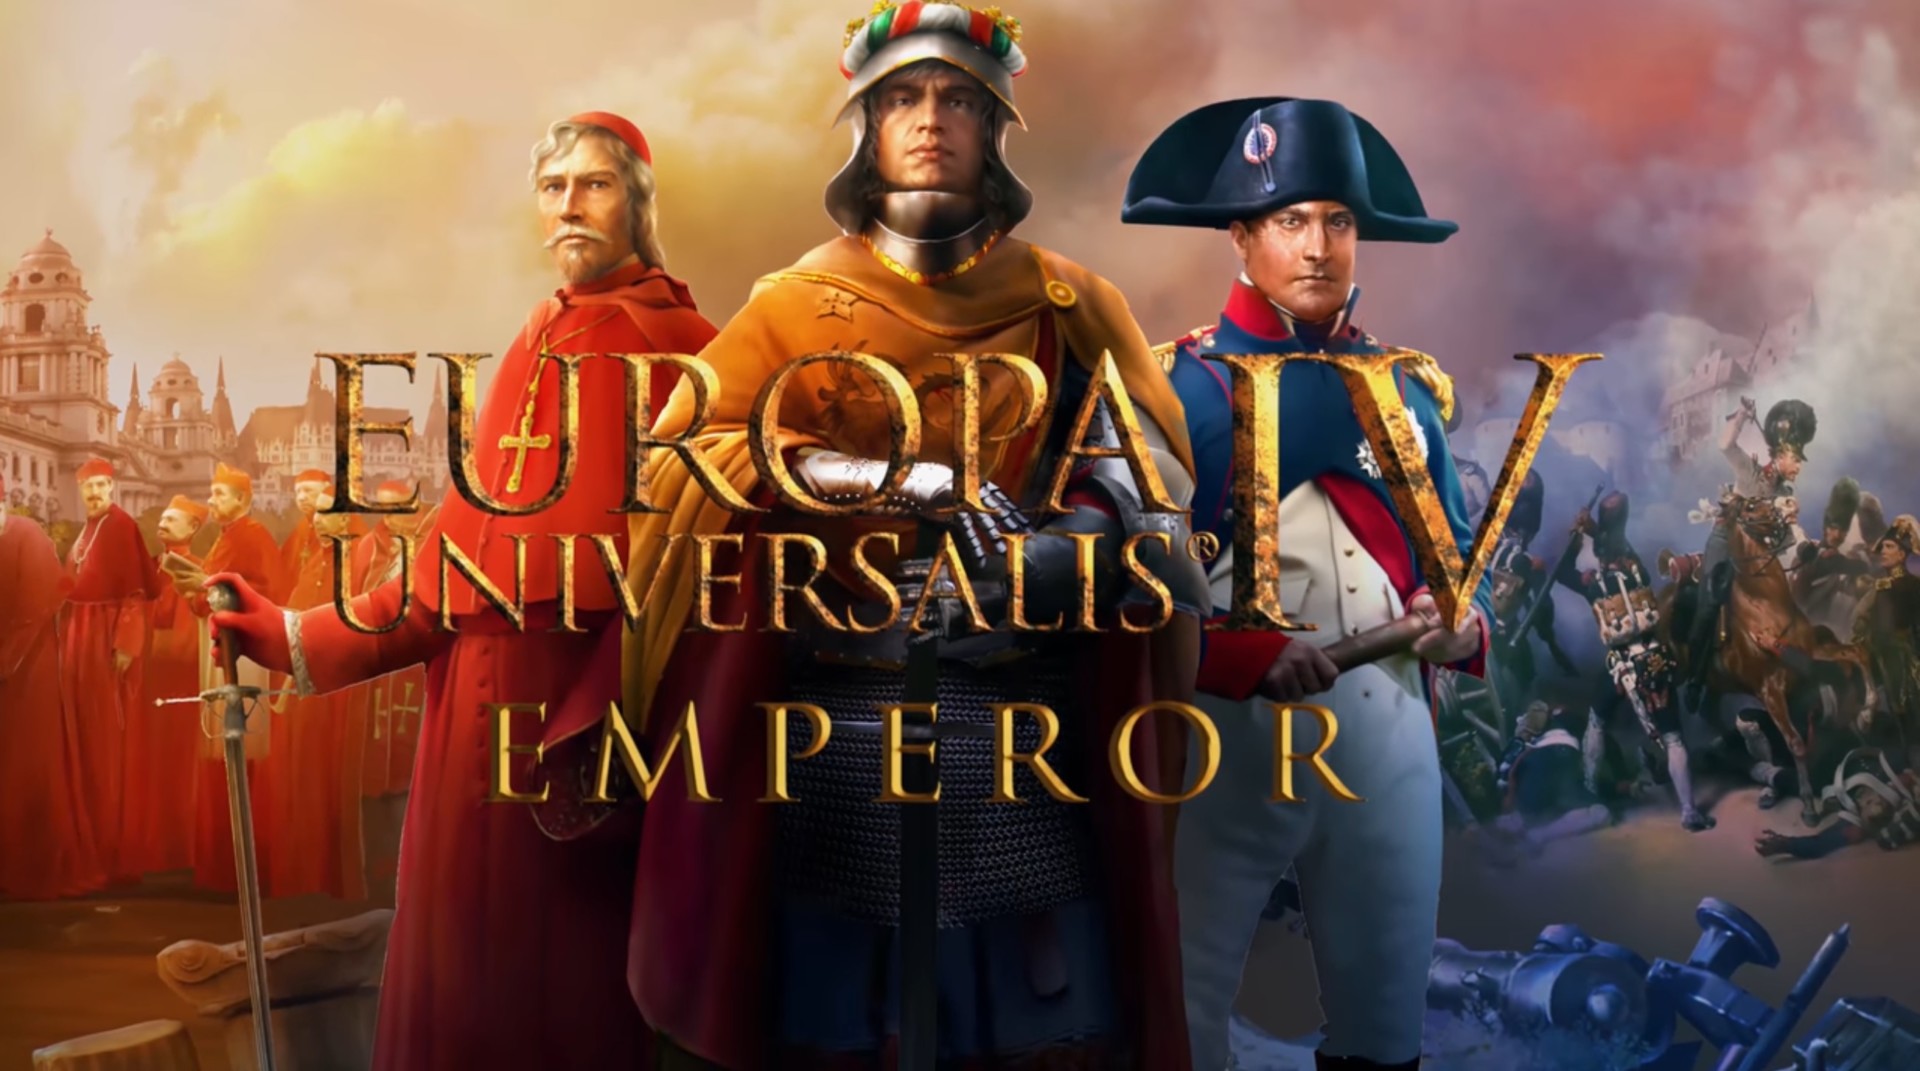 Europa Universalis Iv Emperor Review Europa Universalis 4 Emperor Review Bohemia Austria Holy Roman Empire